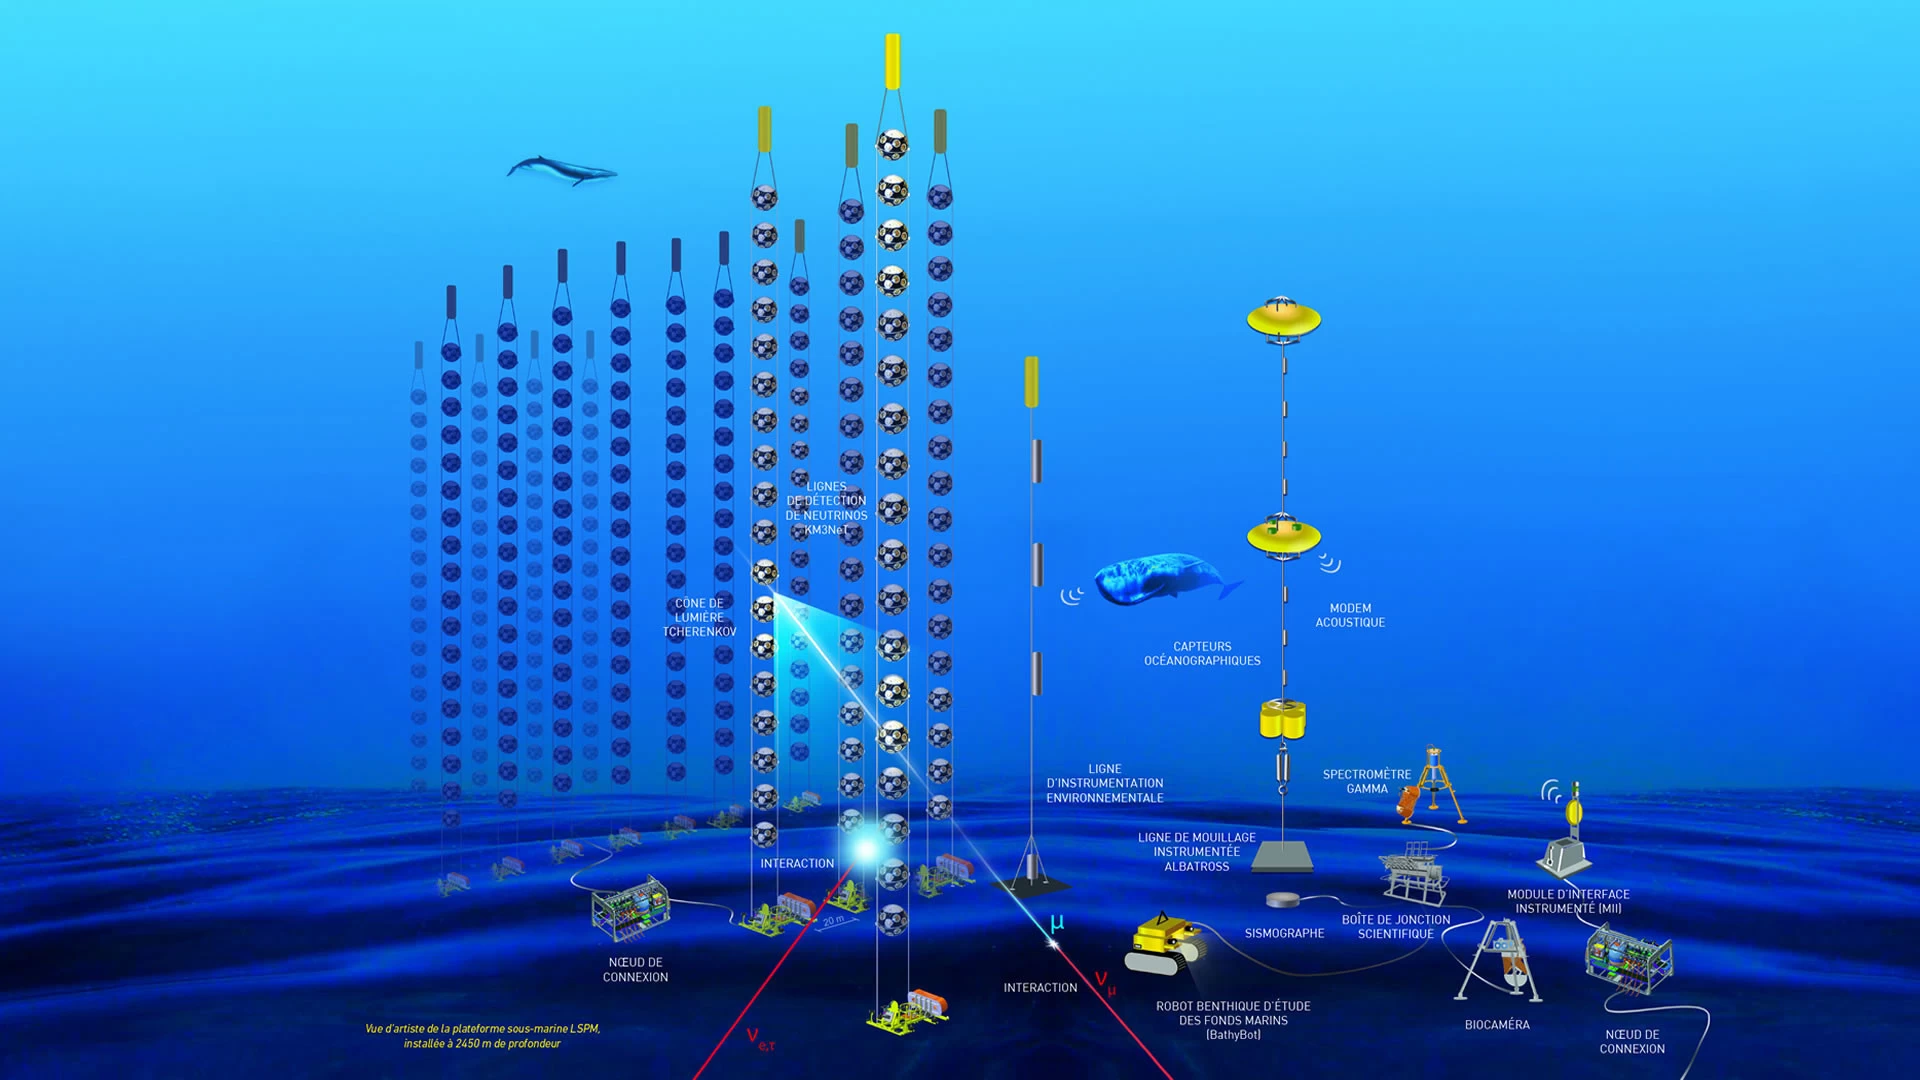 فرانسه آزمایشگاهی پیشرفته در عمق 1.5 مایلی زیر آب می سازد